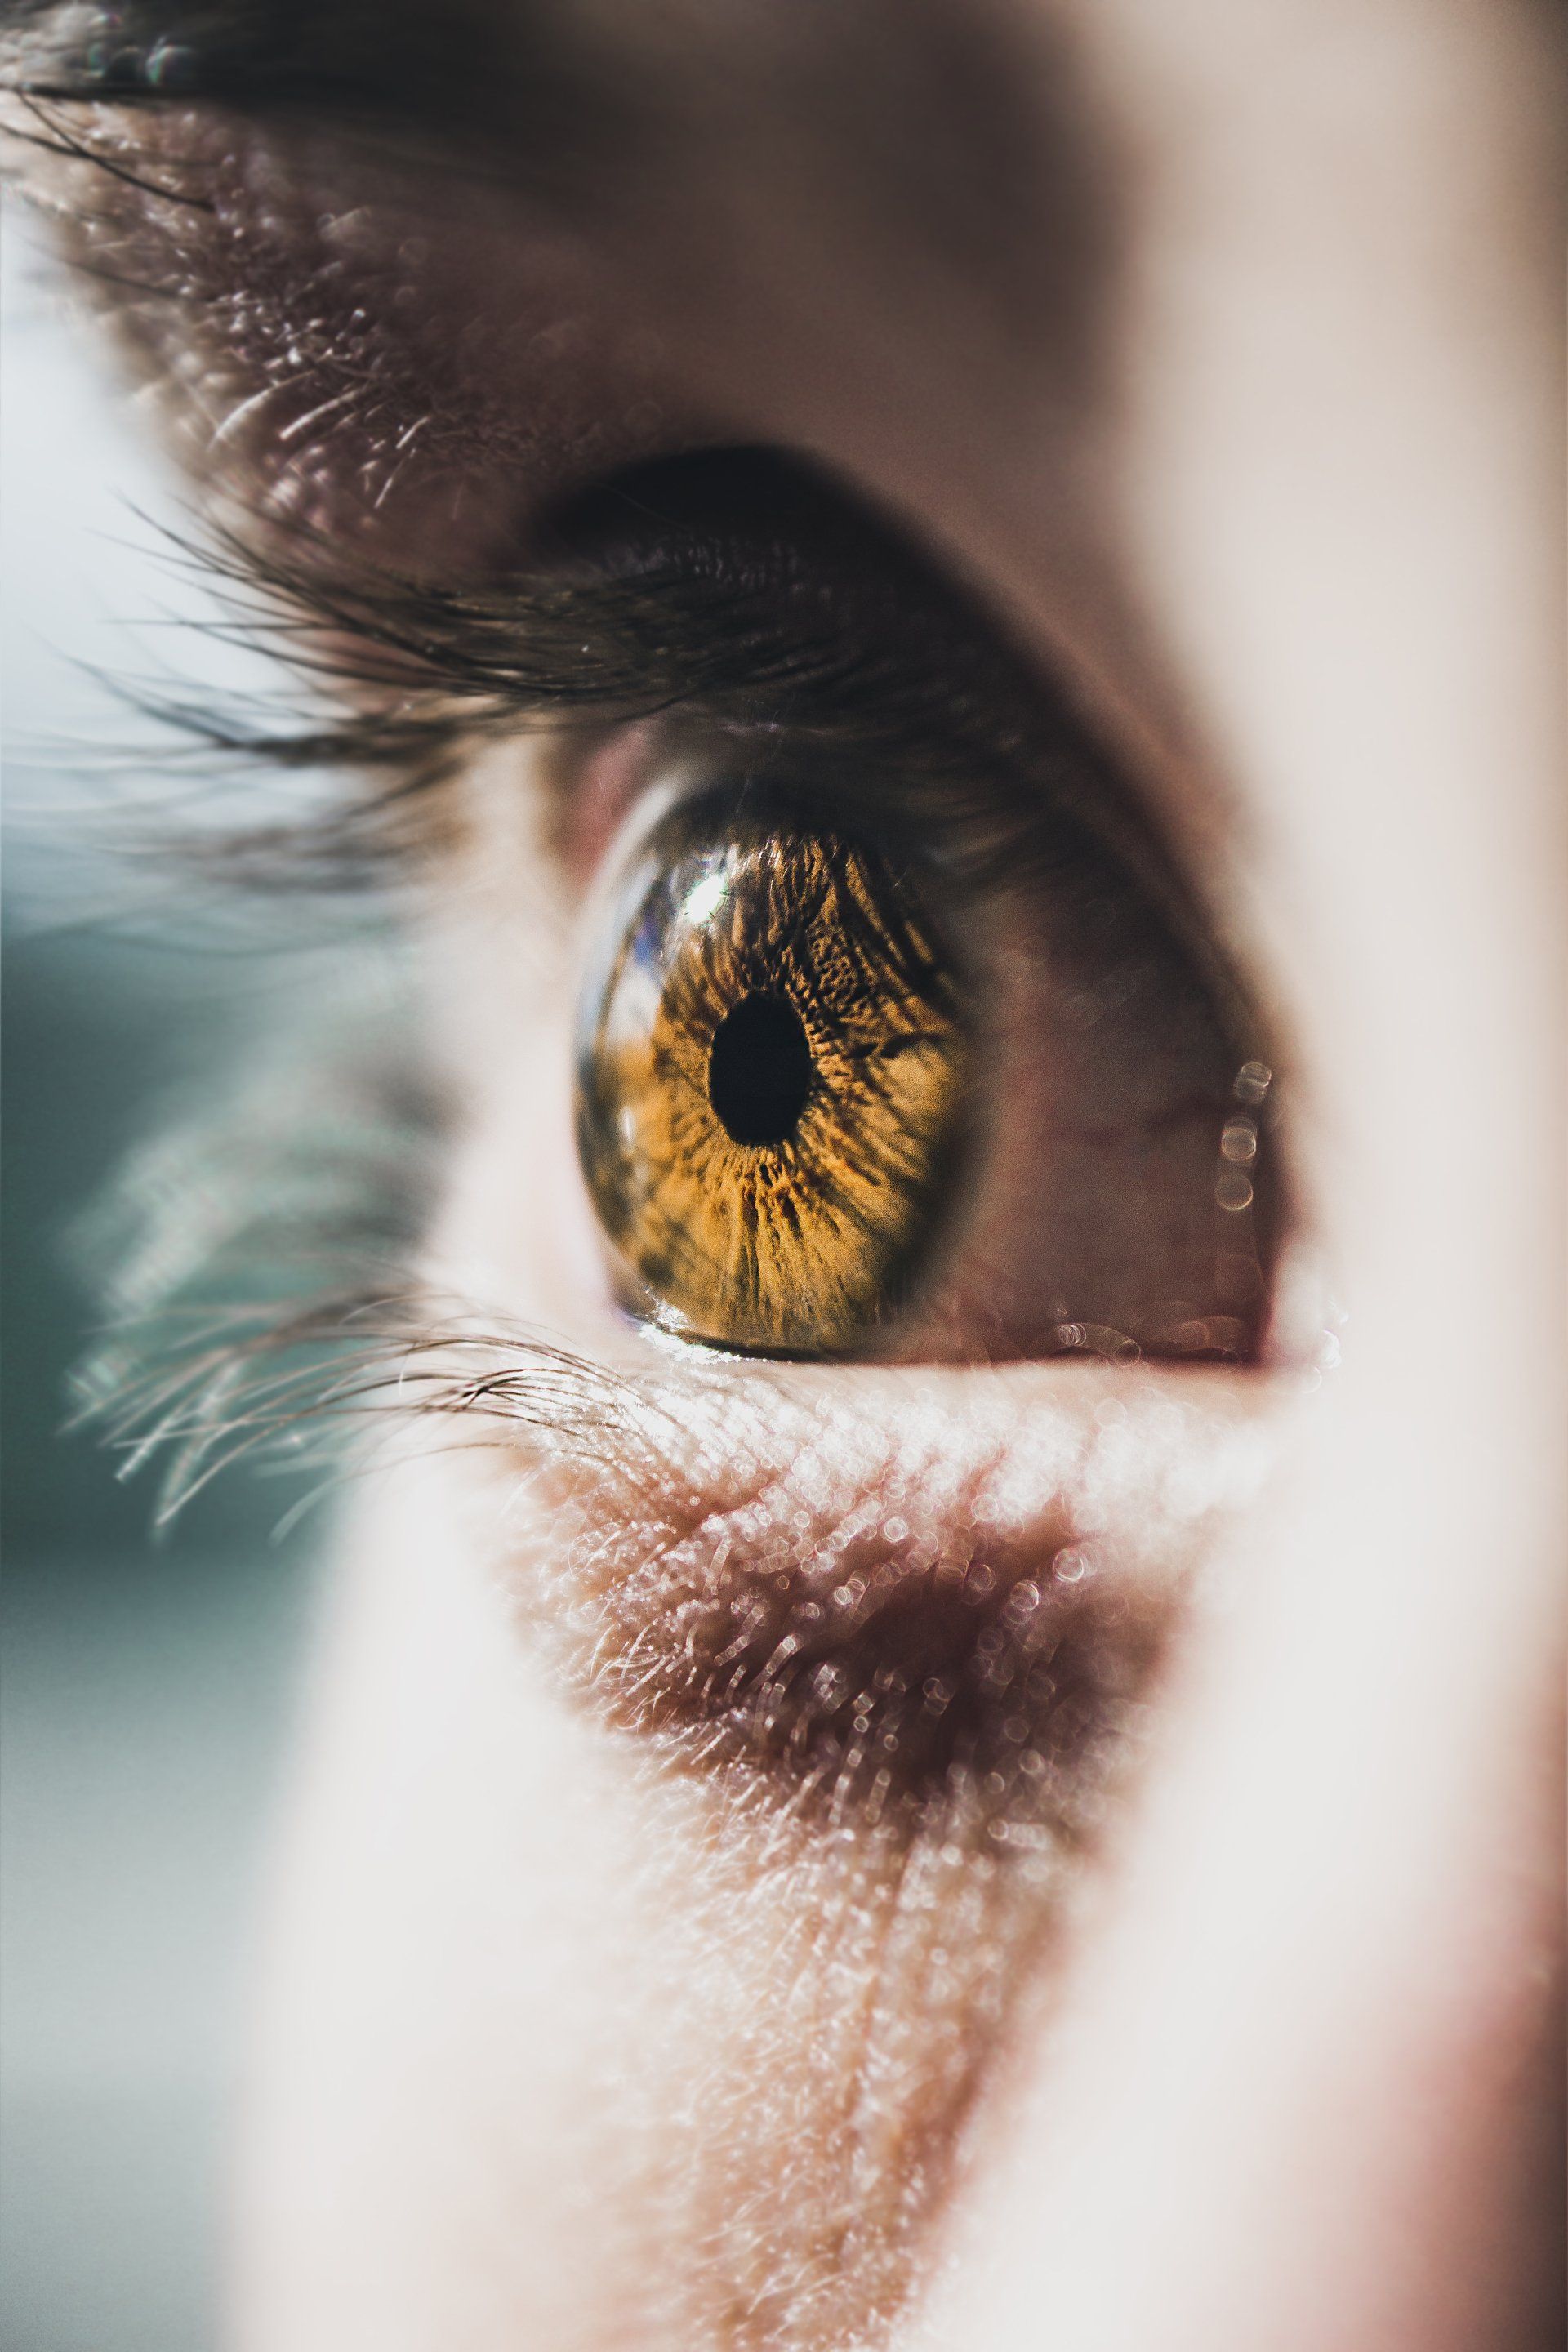 Sacadas oculares podem ajudar a medir função cerebral